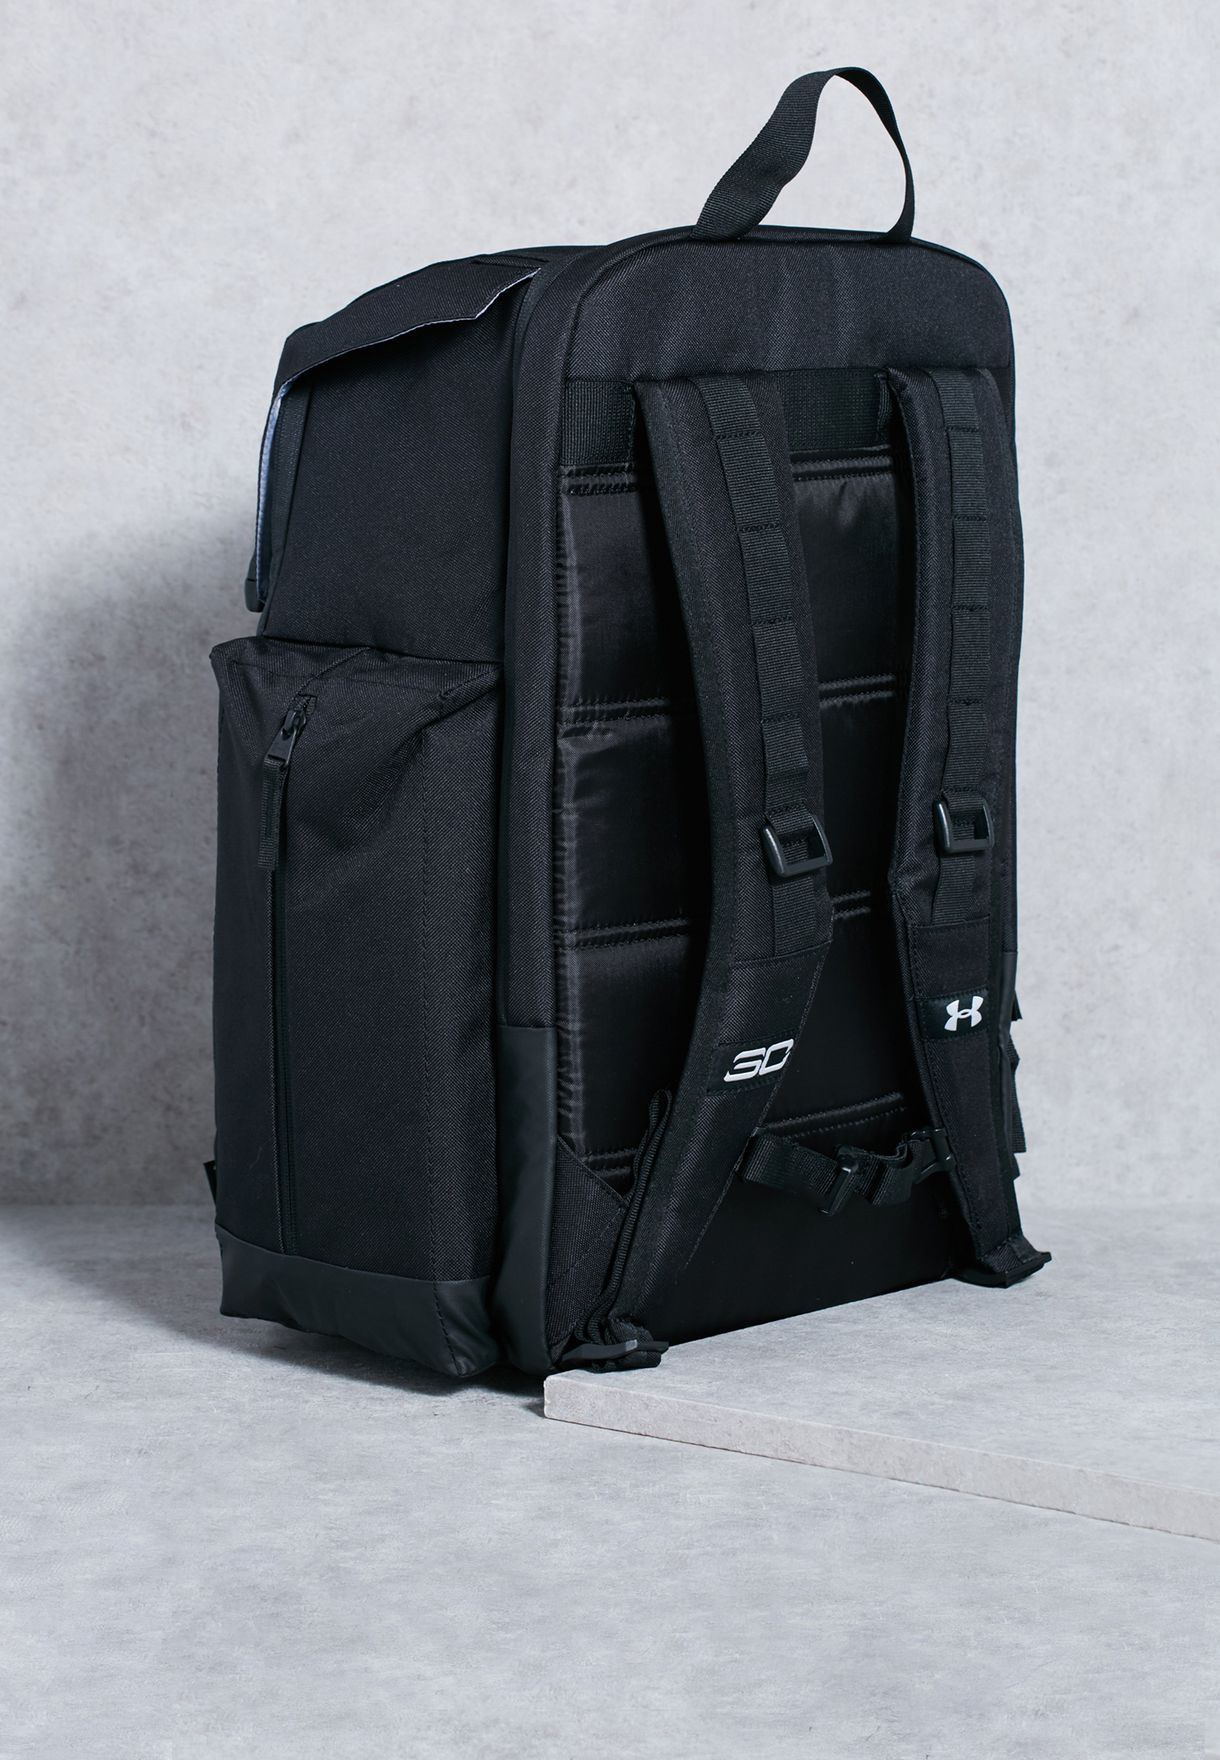 sc30 backpack